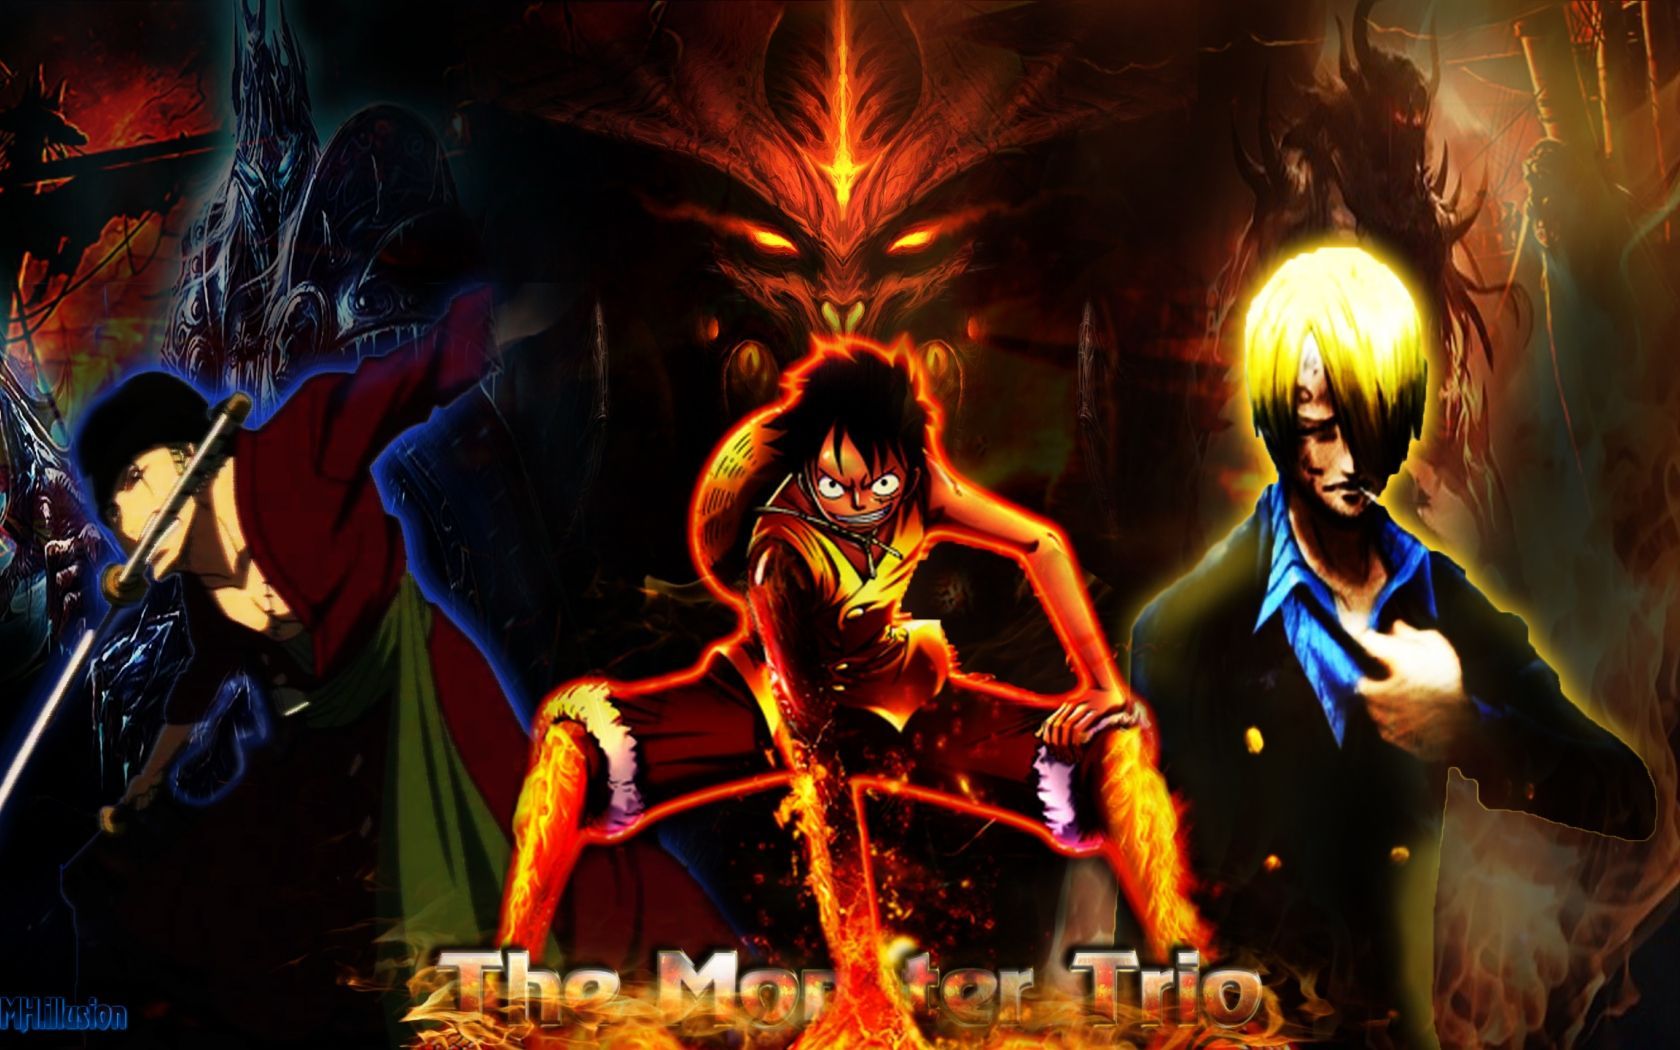 Steam Workshop::One Piece - Monster Trio 4K